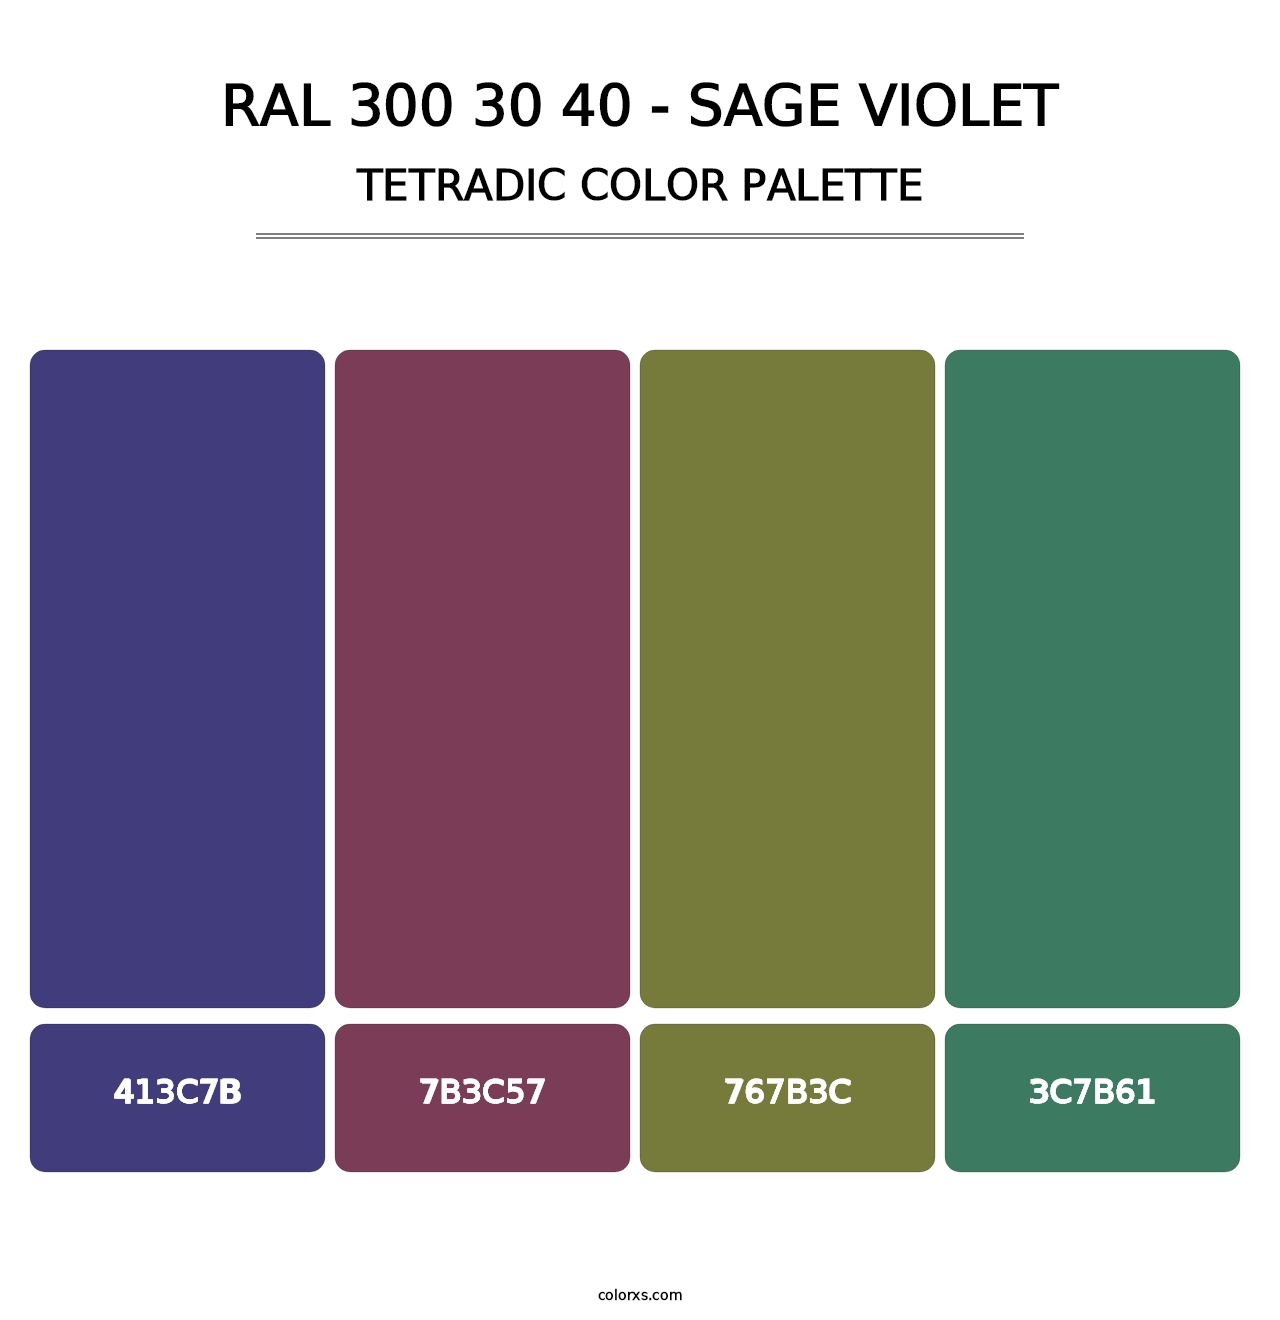 RAL 300 30 40 - Sage Violet - Tetradic Color Palette